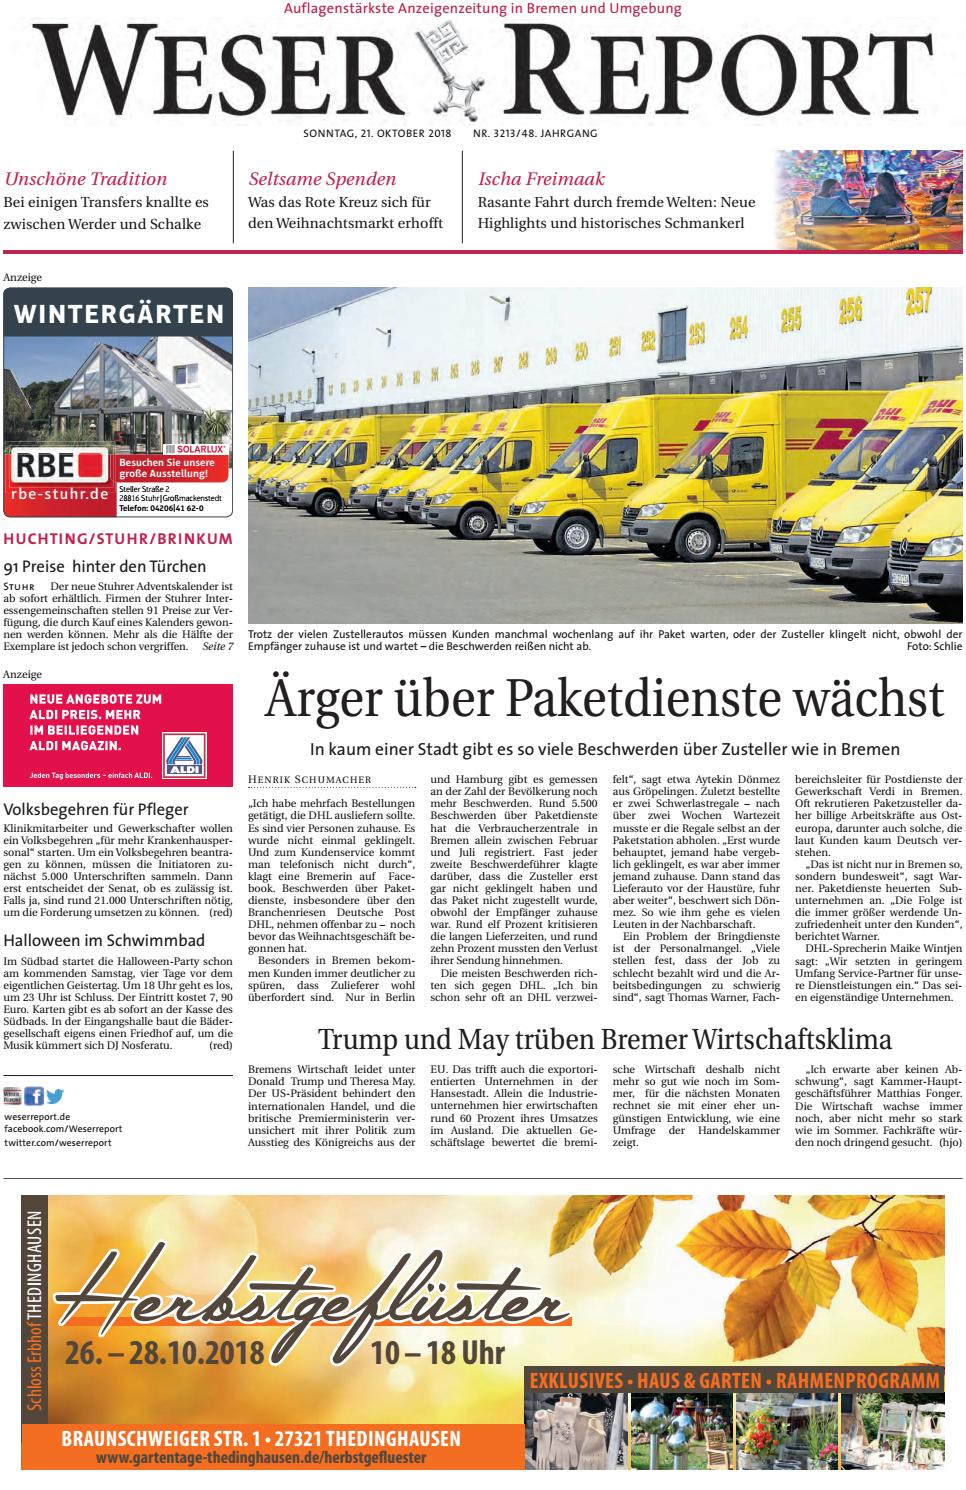 Metallbett Im Garten Schön Weser Report Huchting Stuhr Brinkum Vom 21 10 2018 by Kps